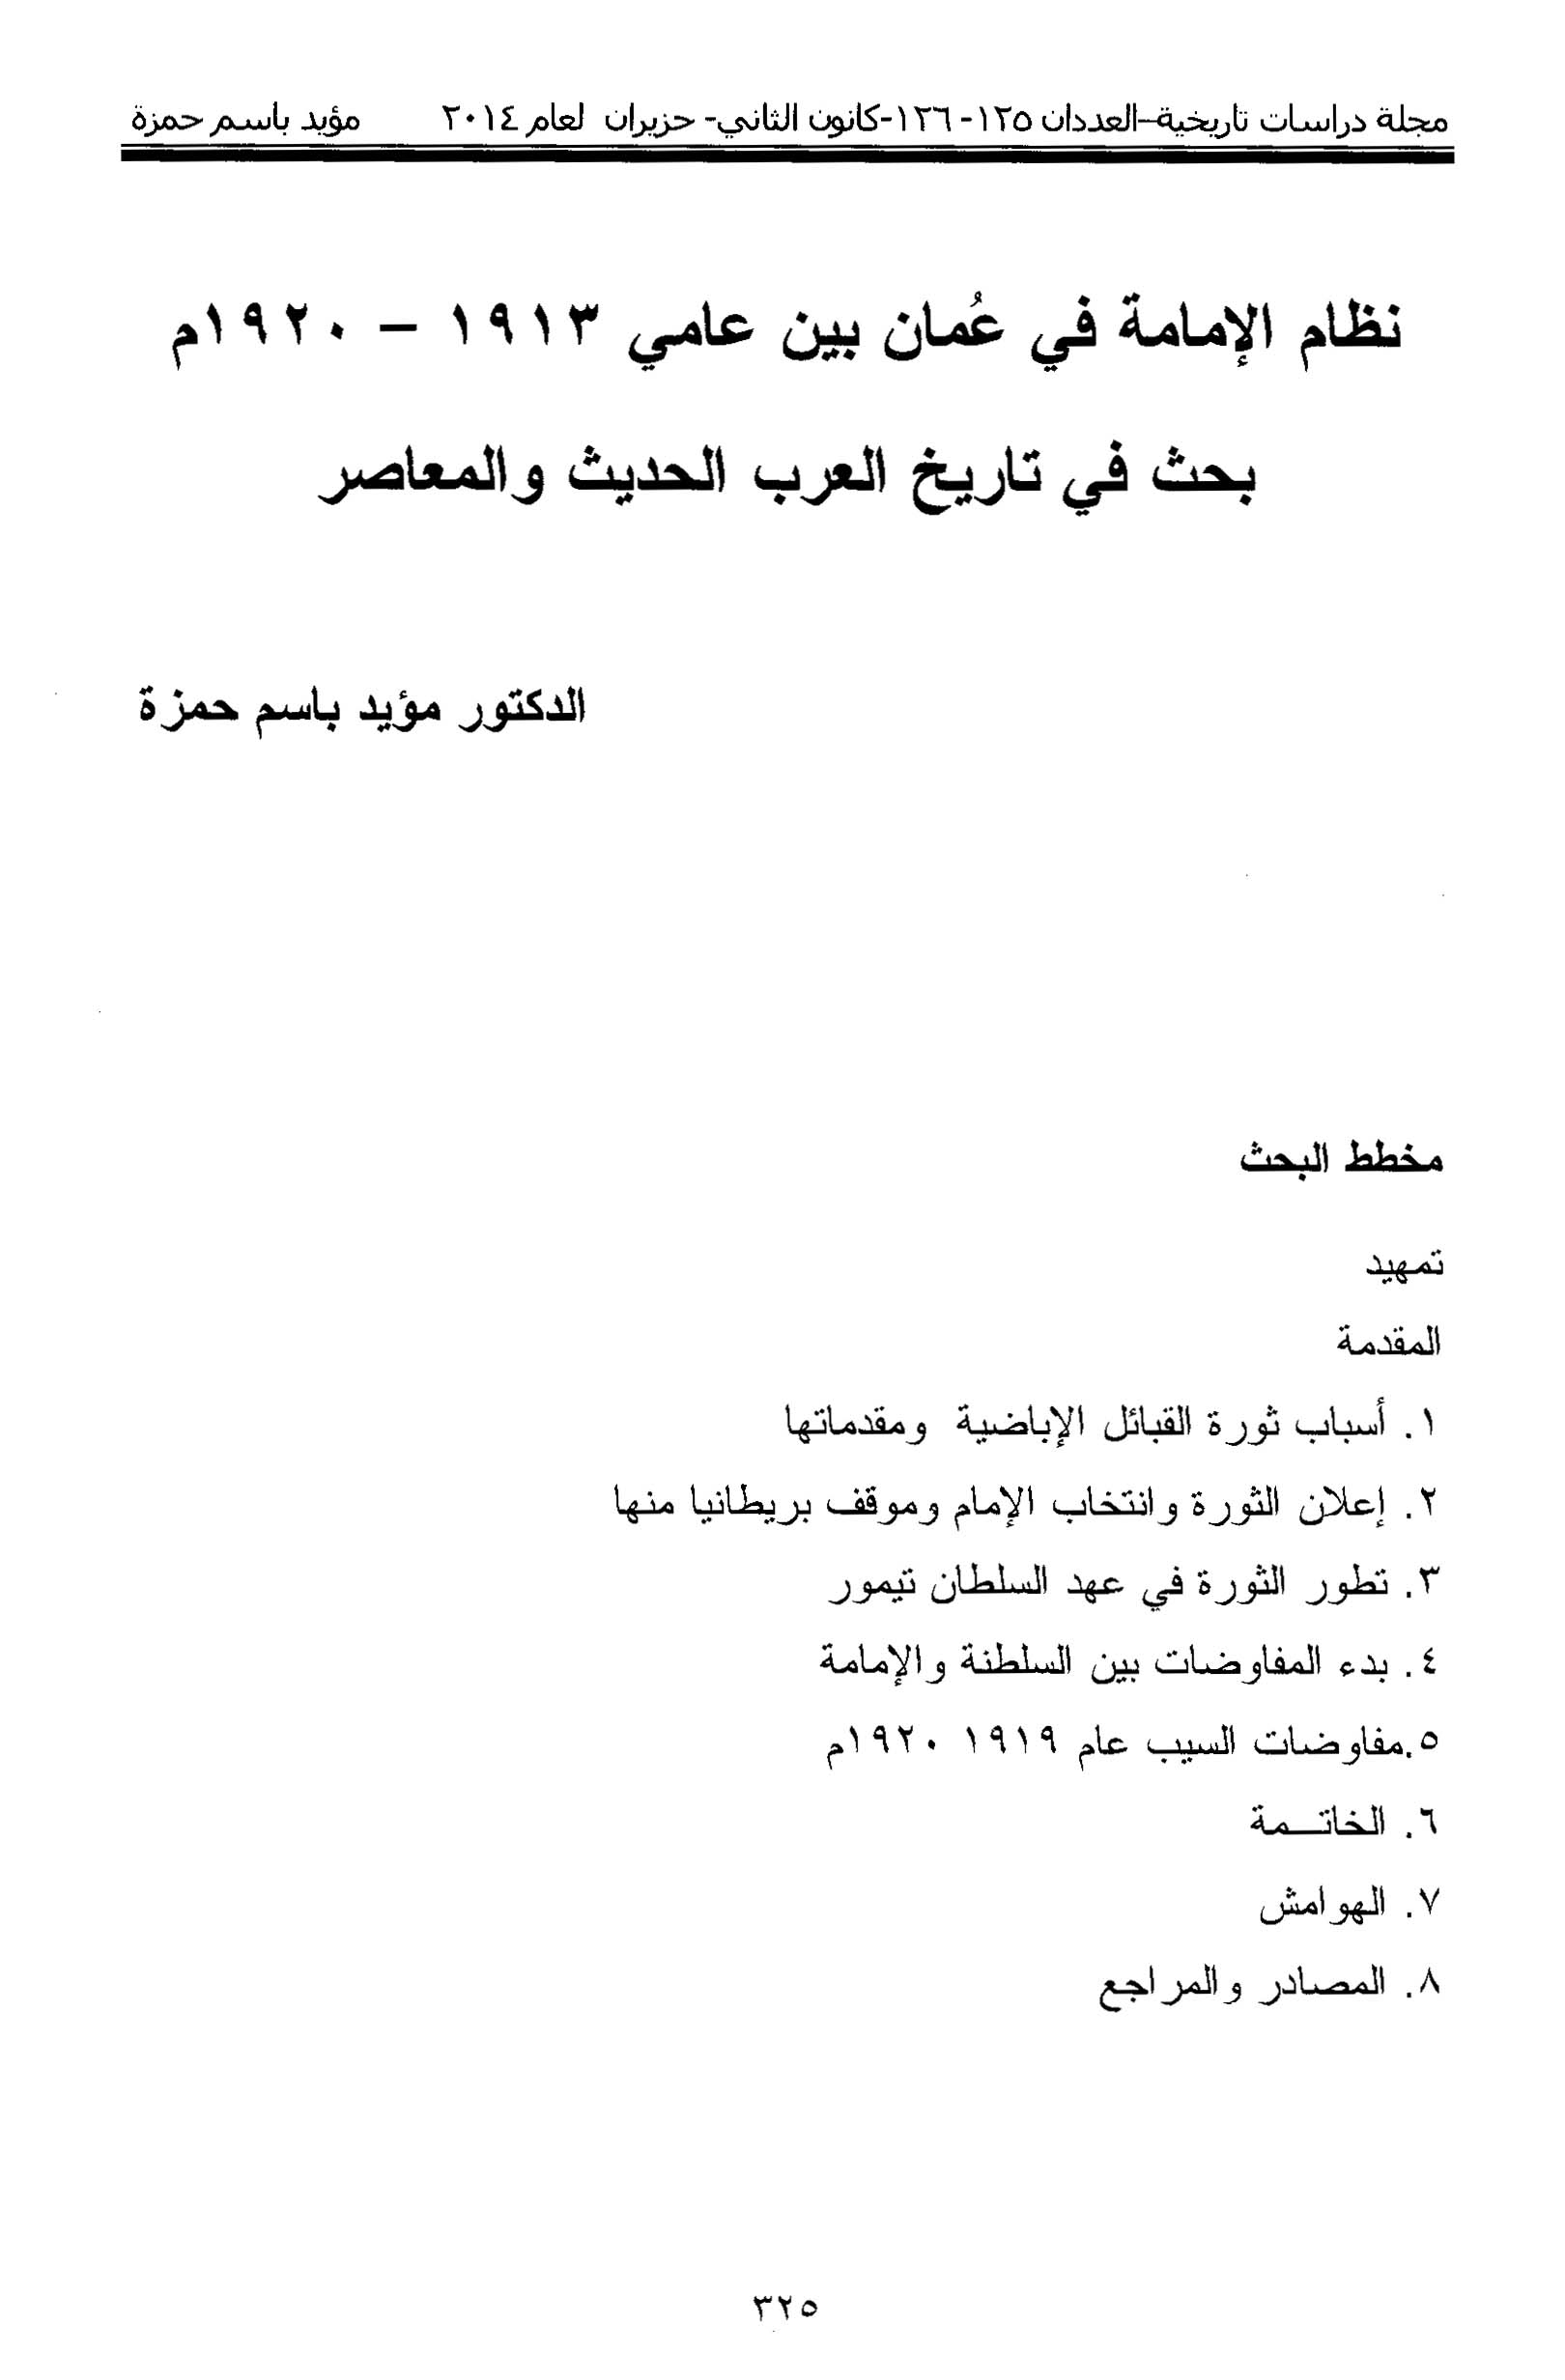 الأرشيف دراسات تاريخية العدد 125 126 تاريخ الإصدار 1 يونيو 2014 مقالة نظام الإمامة في عمان بين عامي 1913 1920م بحث في تاريخ العرب الحديث والمعاصر